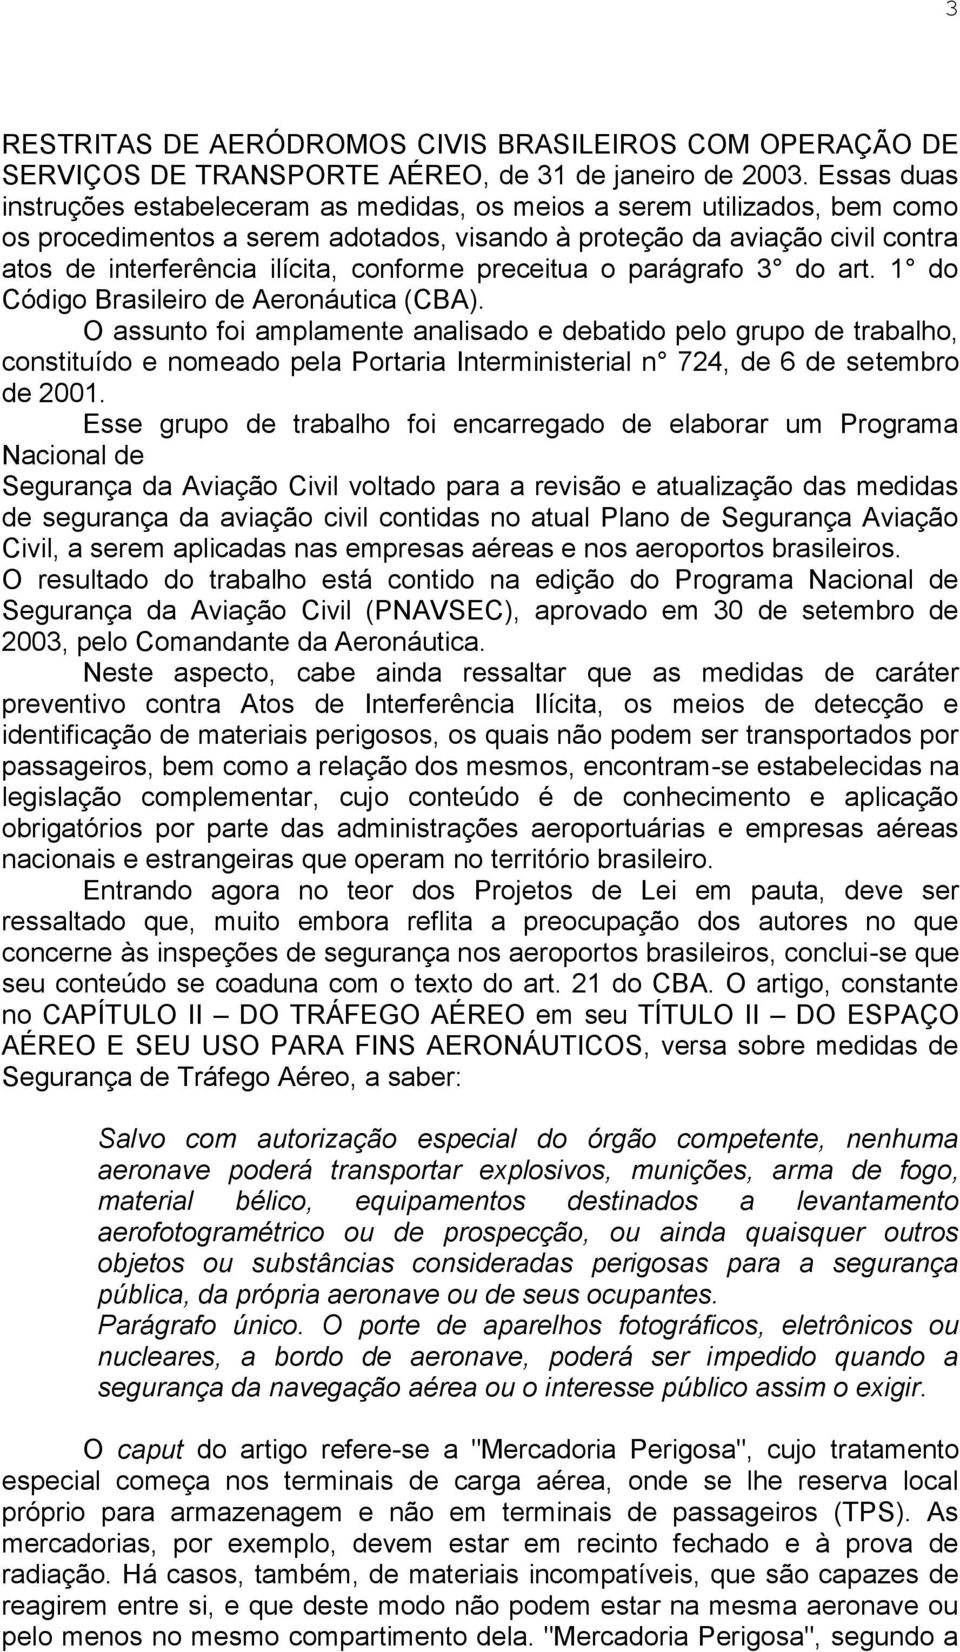 conforme preceitua o parágrafo 3 do art. 1 do Código Brasileiro de Aeronáutica (CBA).